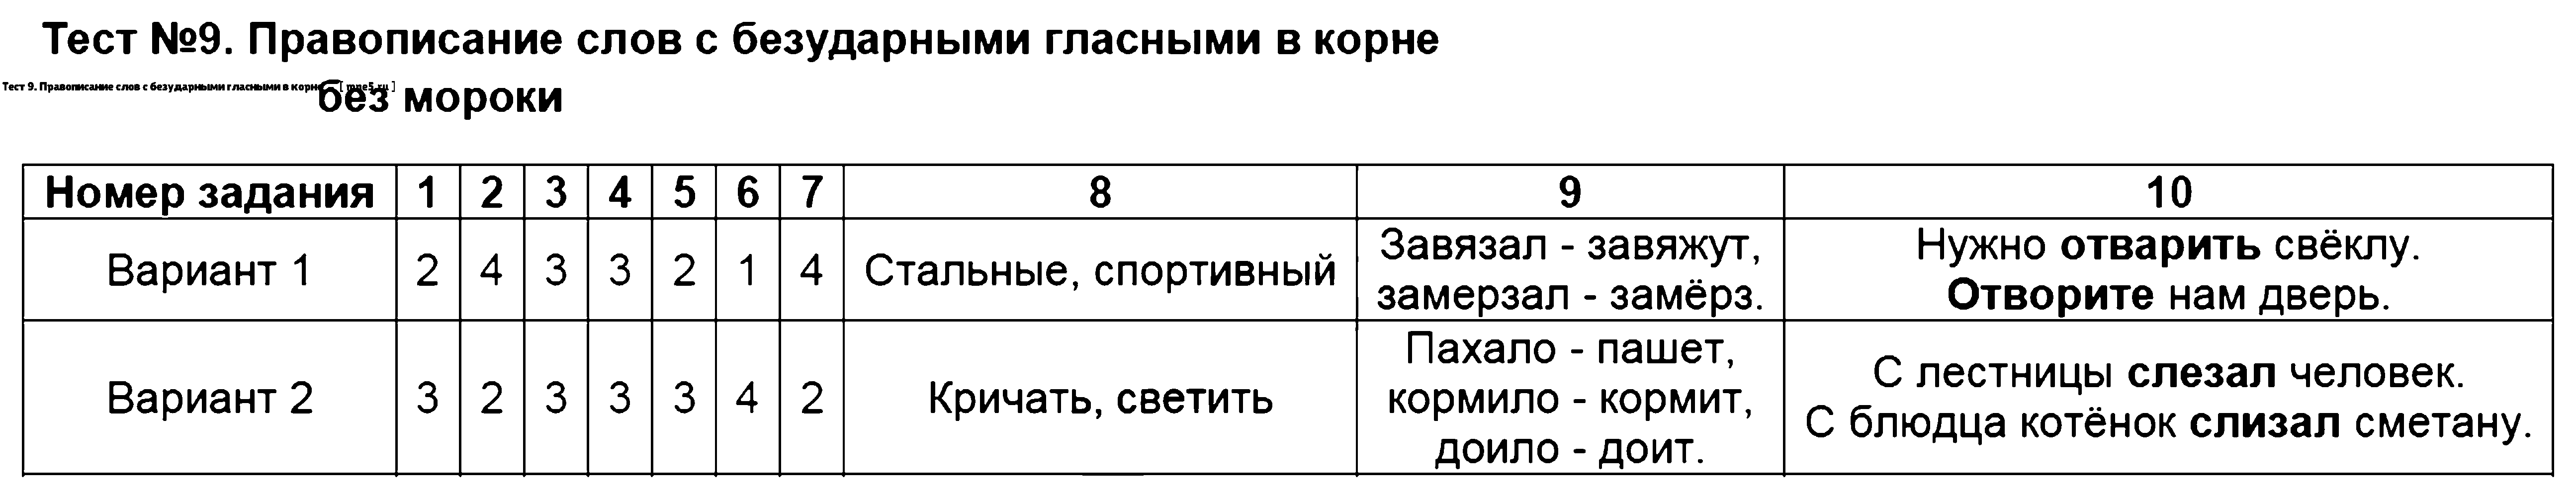 ГДЗ Русский язык 3 класс - Тест 9. Правописание слов с безударными гласными в корне